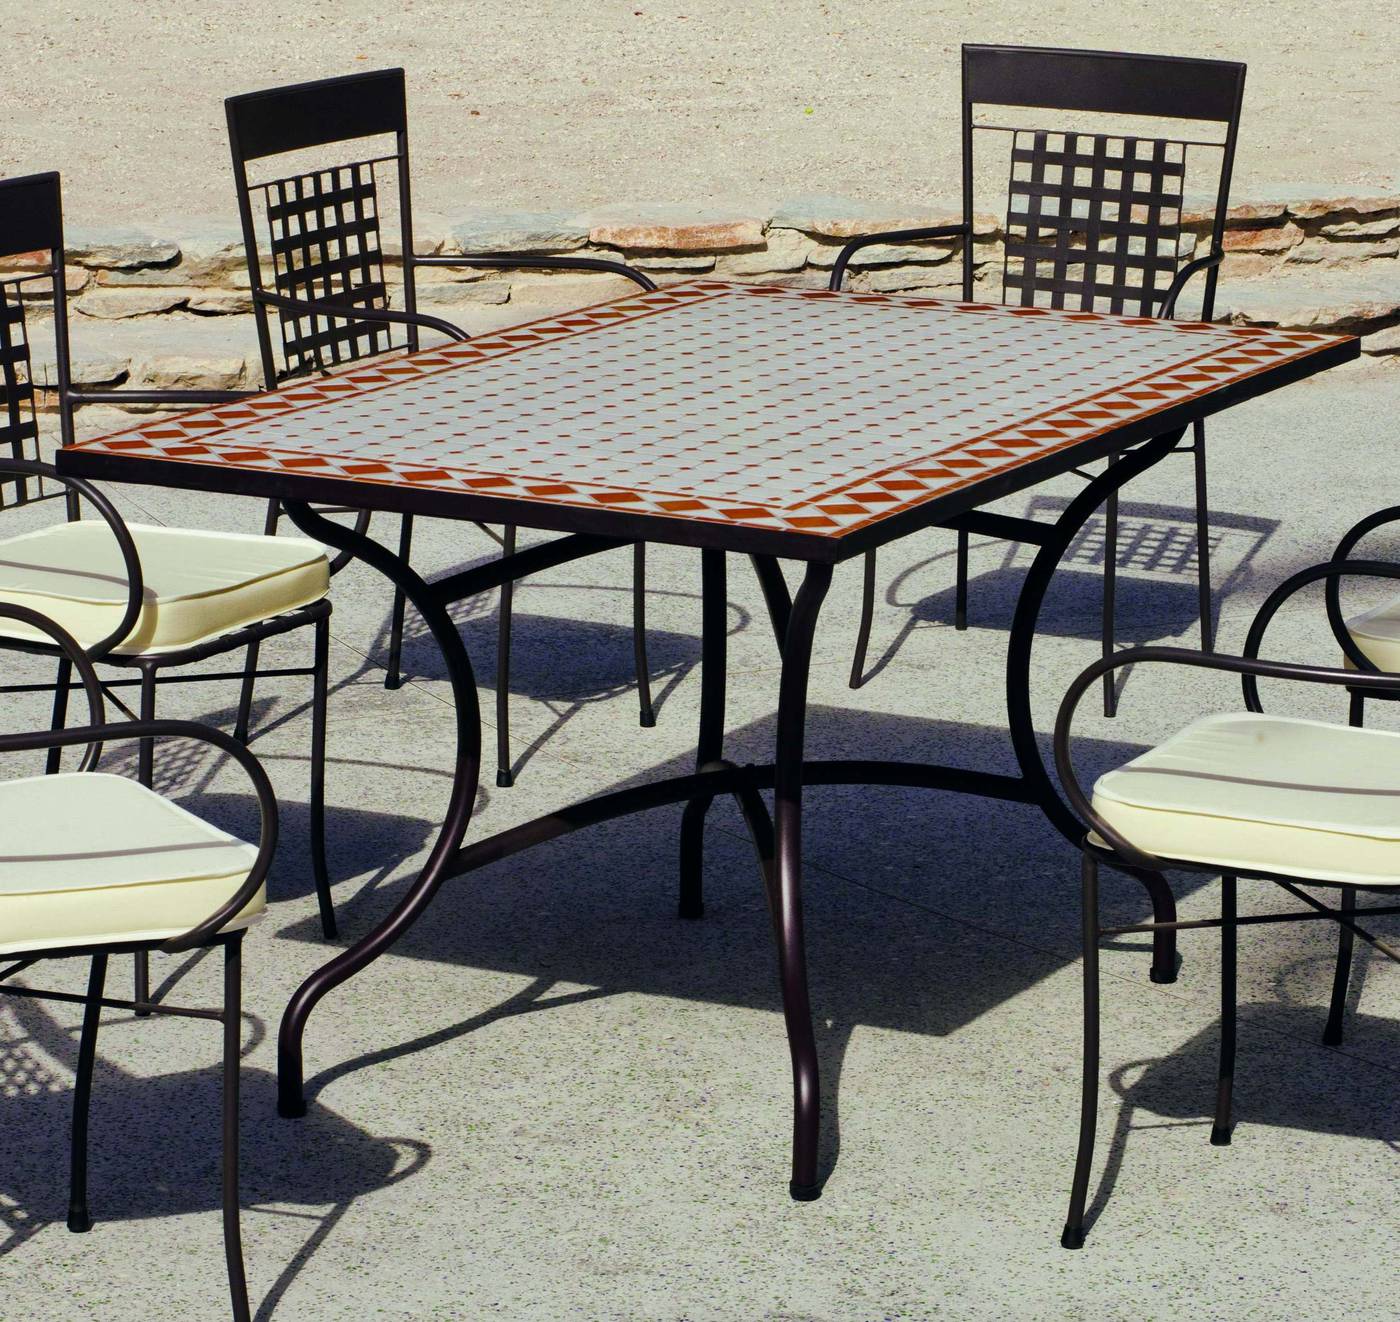 Conjunto Mosaico Atrium-Vigo 150-4 - Conjunto de forja para jardín o terraza: 1 mesa de forja con panel mosaico + 4 sillones de forja + 4 cojines. Mesa válida para 6 sillones.